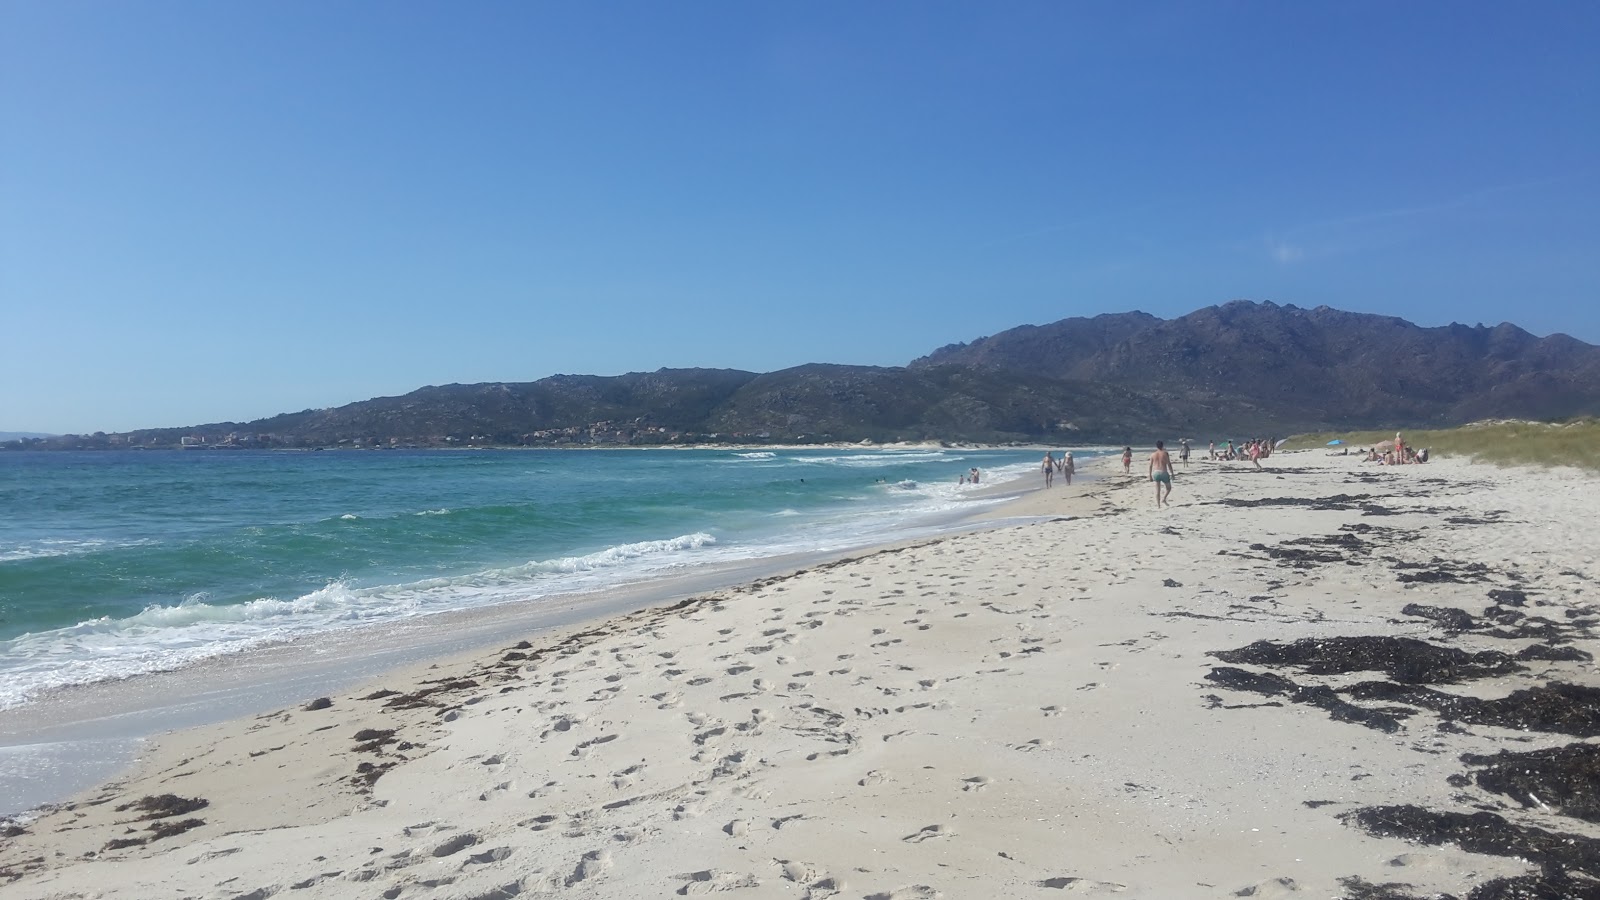 Praia de San Mamede'in fotoğrafı beyaz ince kum yüzey ile